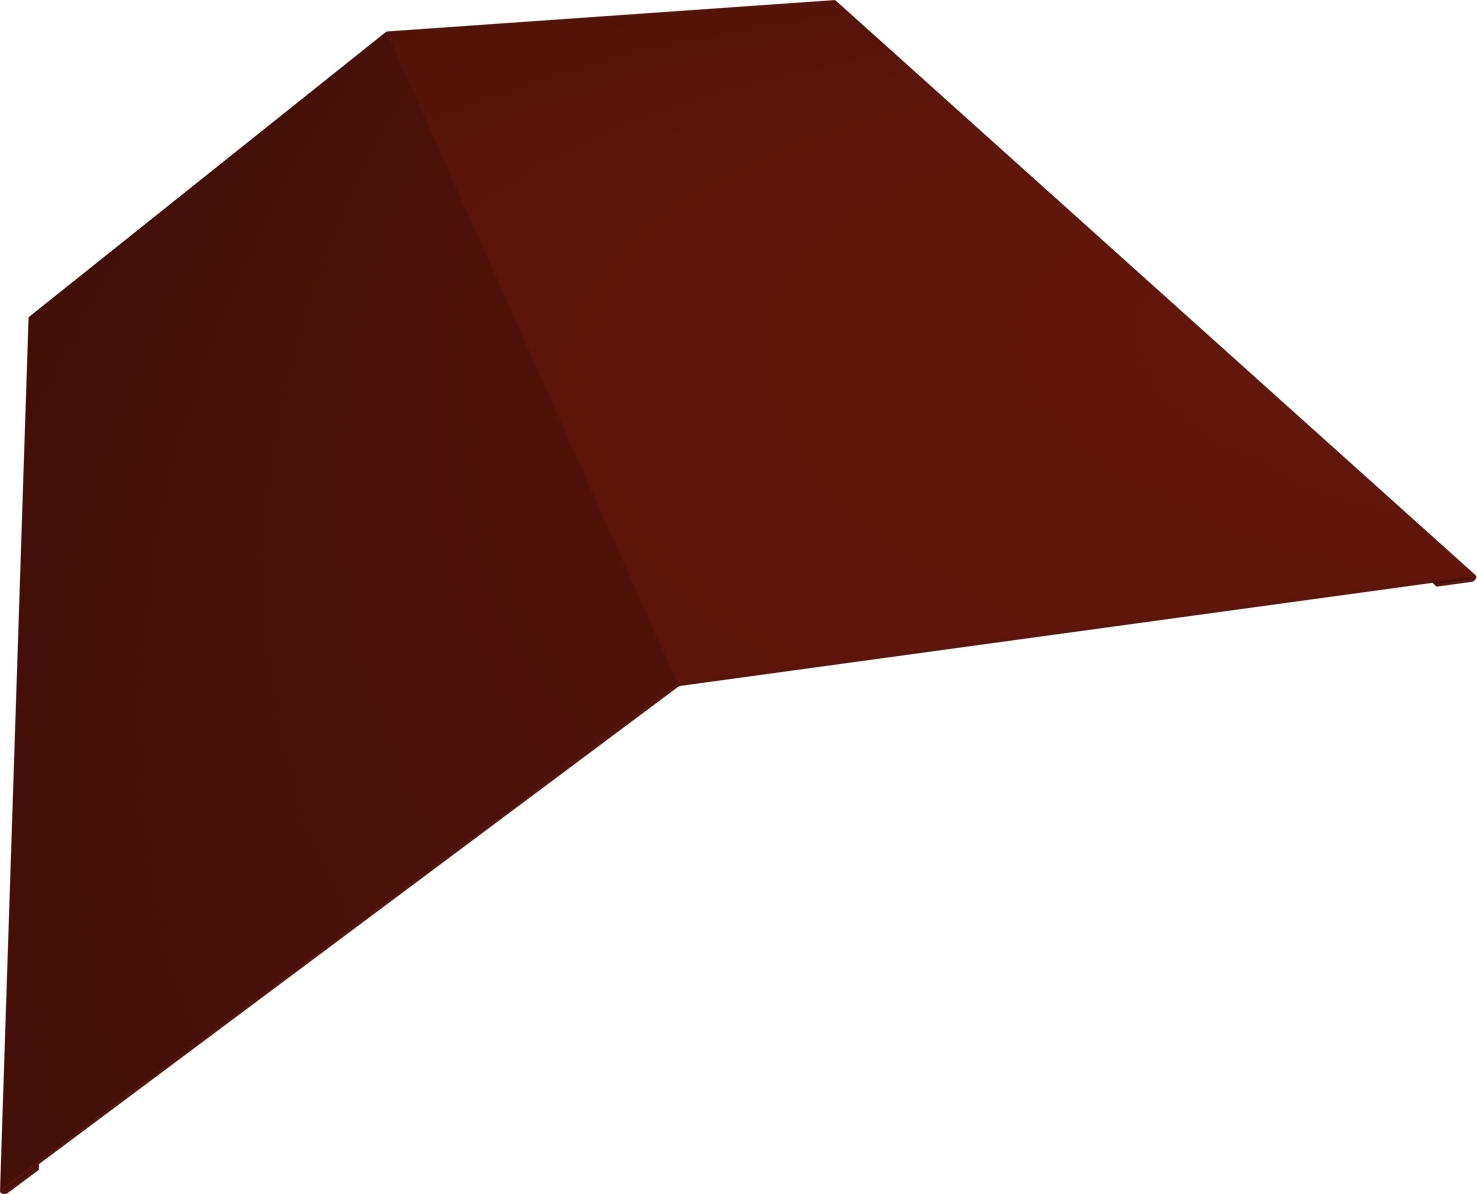 Планка конька плоского 190х190 0,5 GreenCoat Pural BT, matt RR 29 красный (RAL 3009 оксидно-красный)